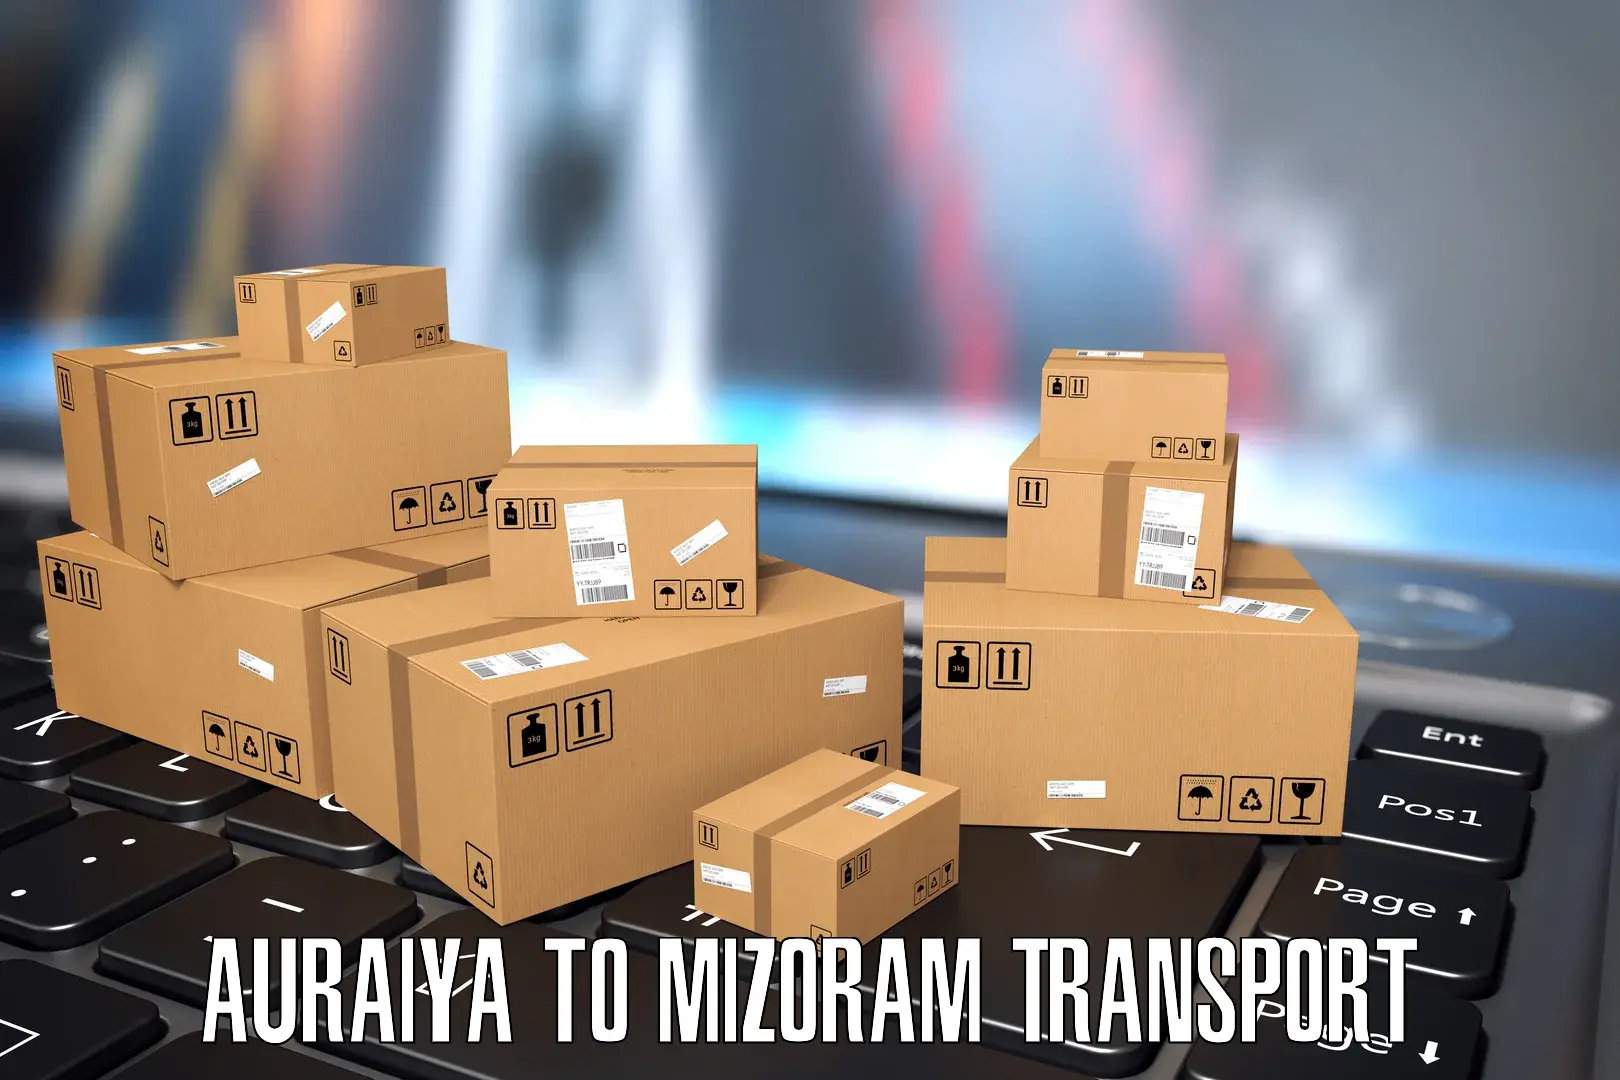 Online transport service Auraiya to Aizawl